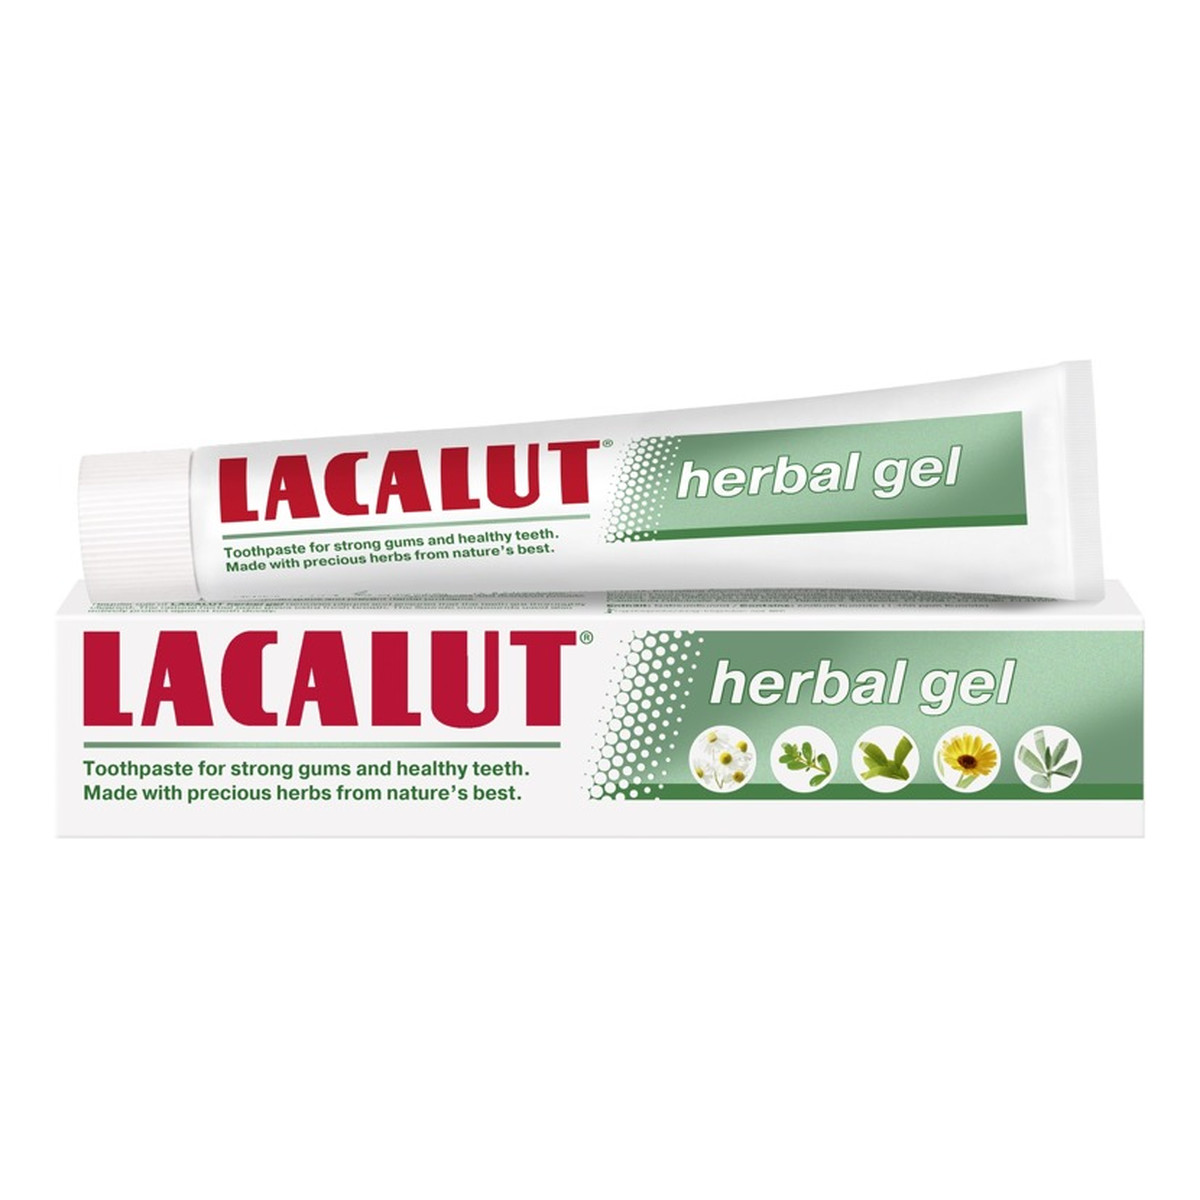 Lacalut Herbal Ge pasta do zębów 75ml